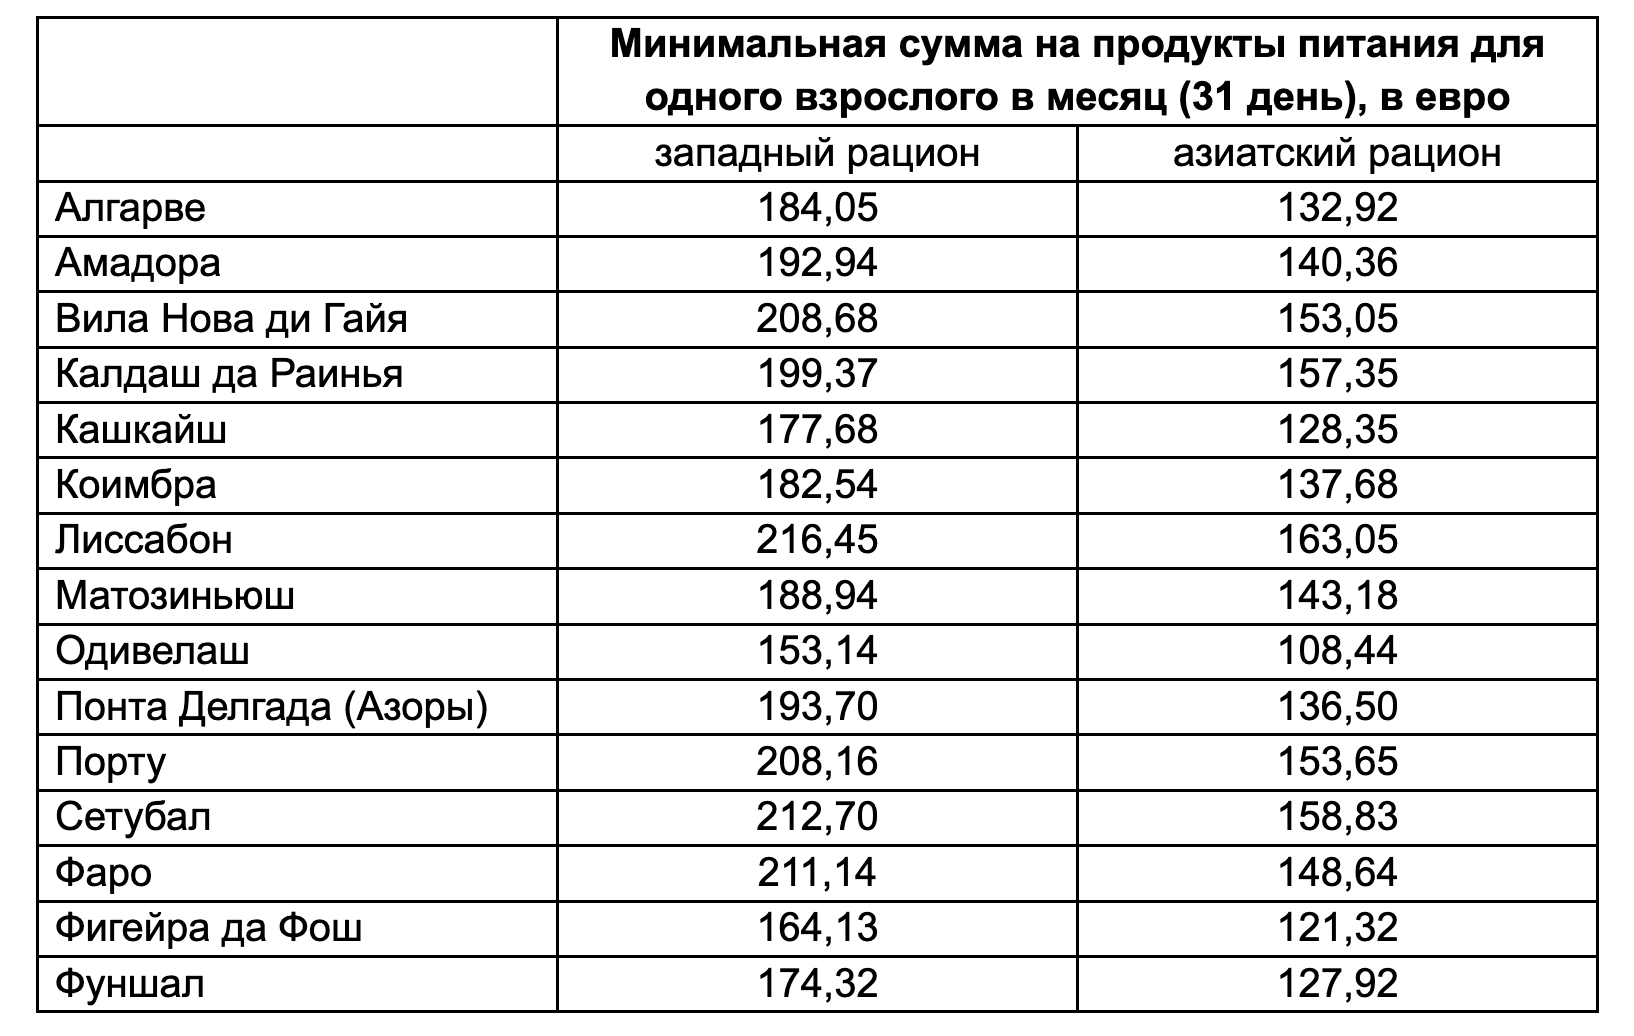 затраты на еду в разных муниципалитетах